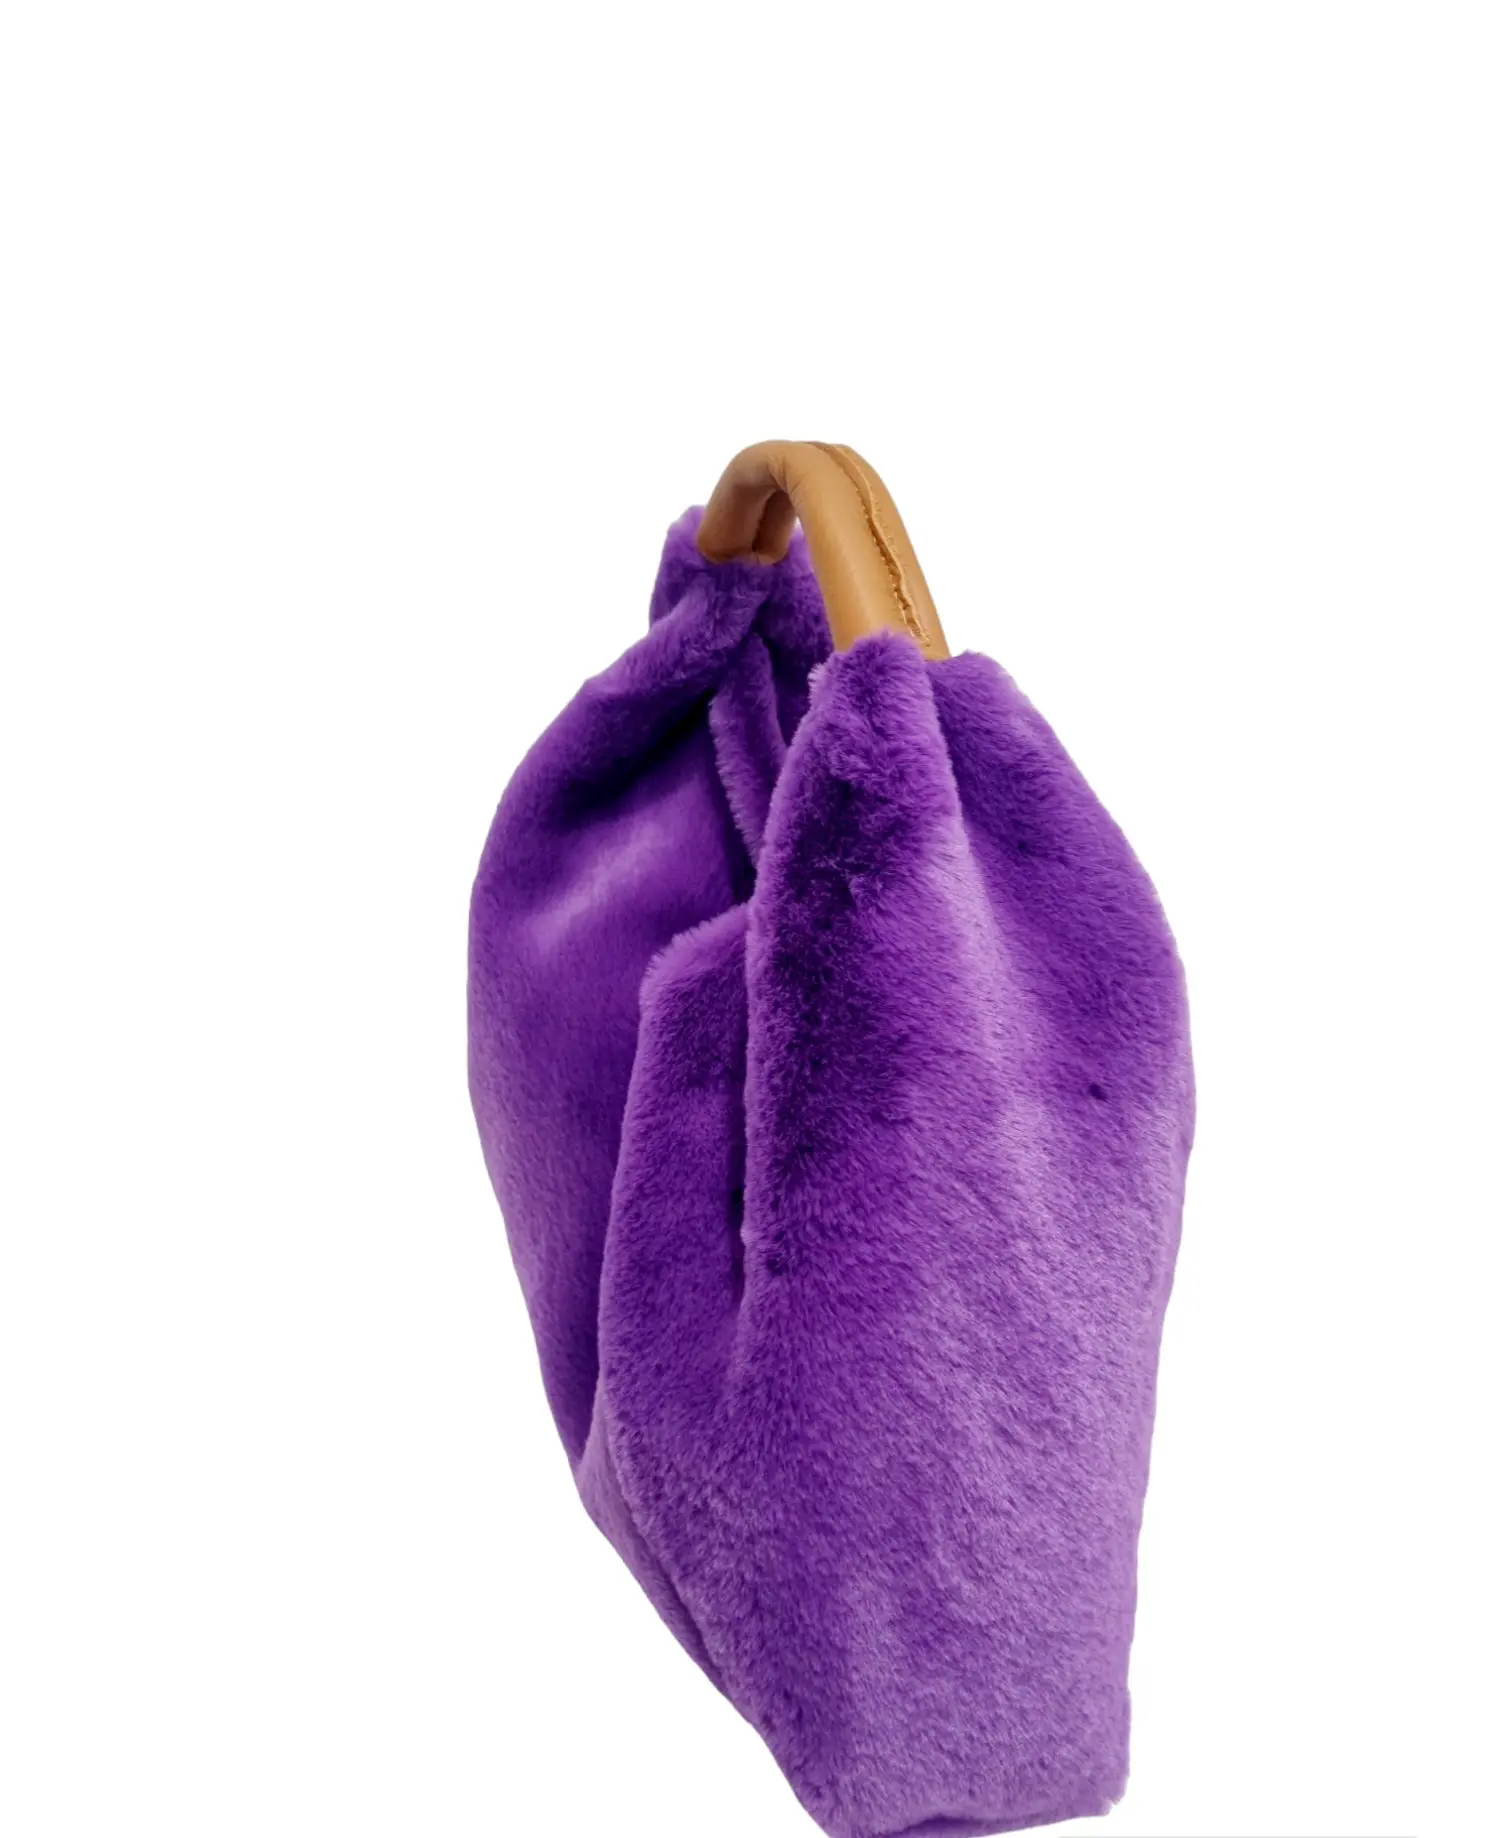 Lila Bären-Pelosina-Tasche mit Griff aus echtem Leder, hergestellt in Italien, blanker Innenraum, Magnetknopfverschluss. Zum Tragen an der Hand oder am halben Arm. Maße L34 H 15 Armbreite 8 cm